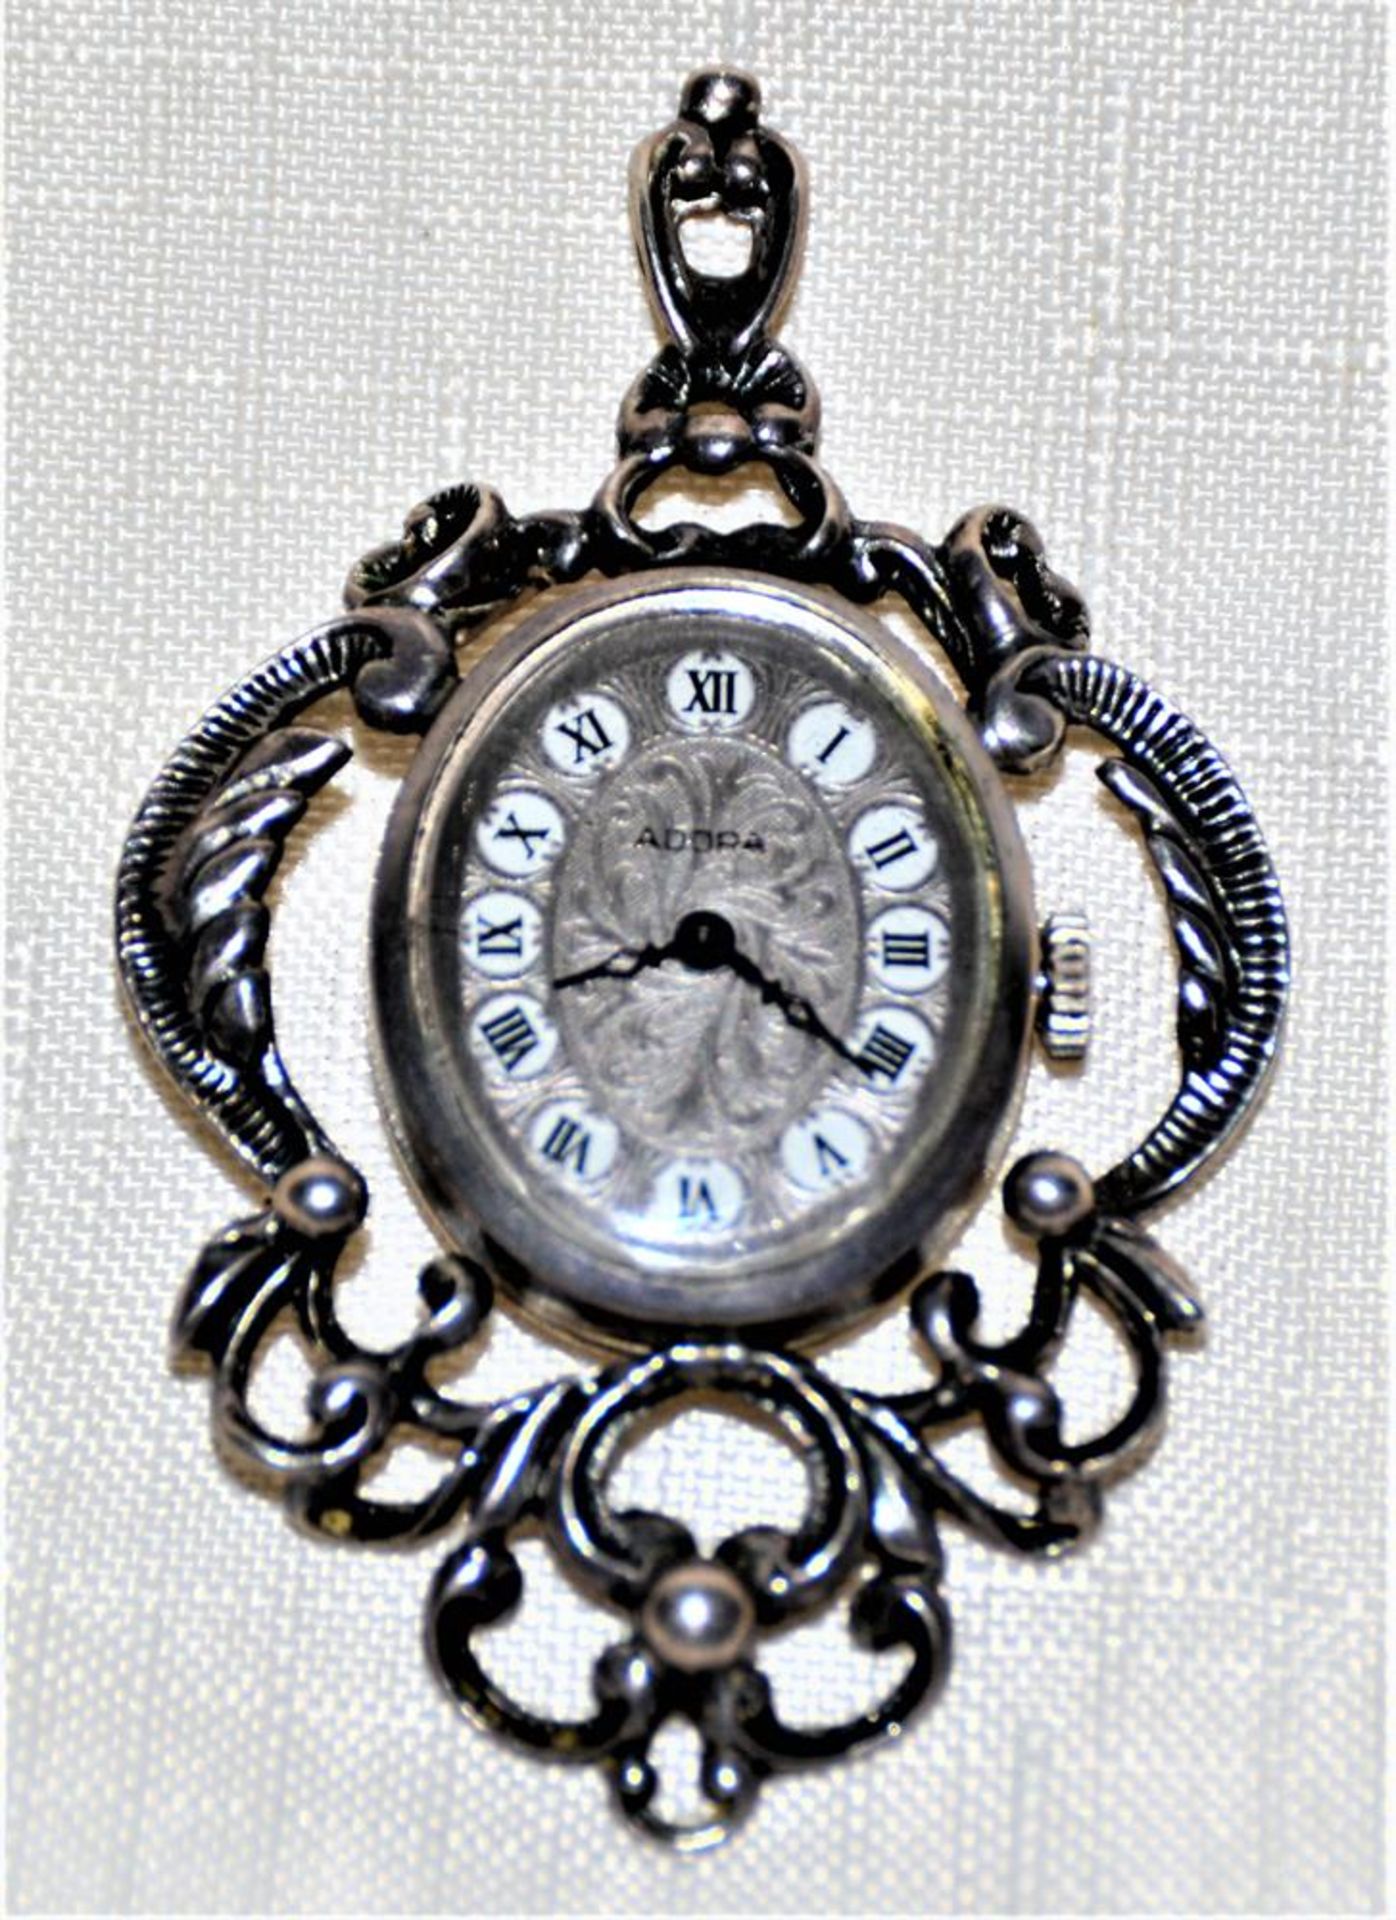 Adora Uhrenanhänger 835 Silber, 5,5x3,7 cm, die Uhr läuft an ( Ganggenauigkeit u. Laufdauer